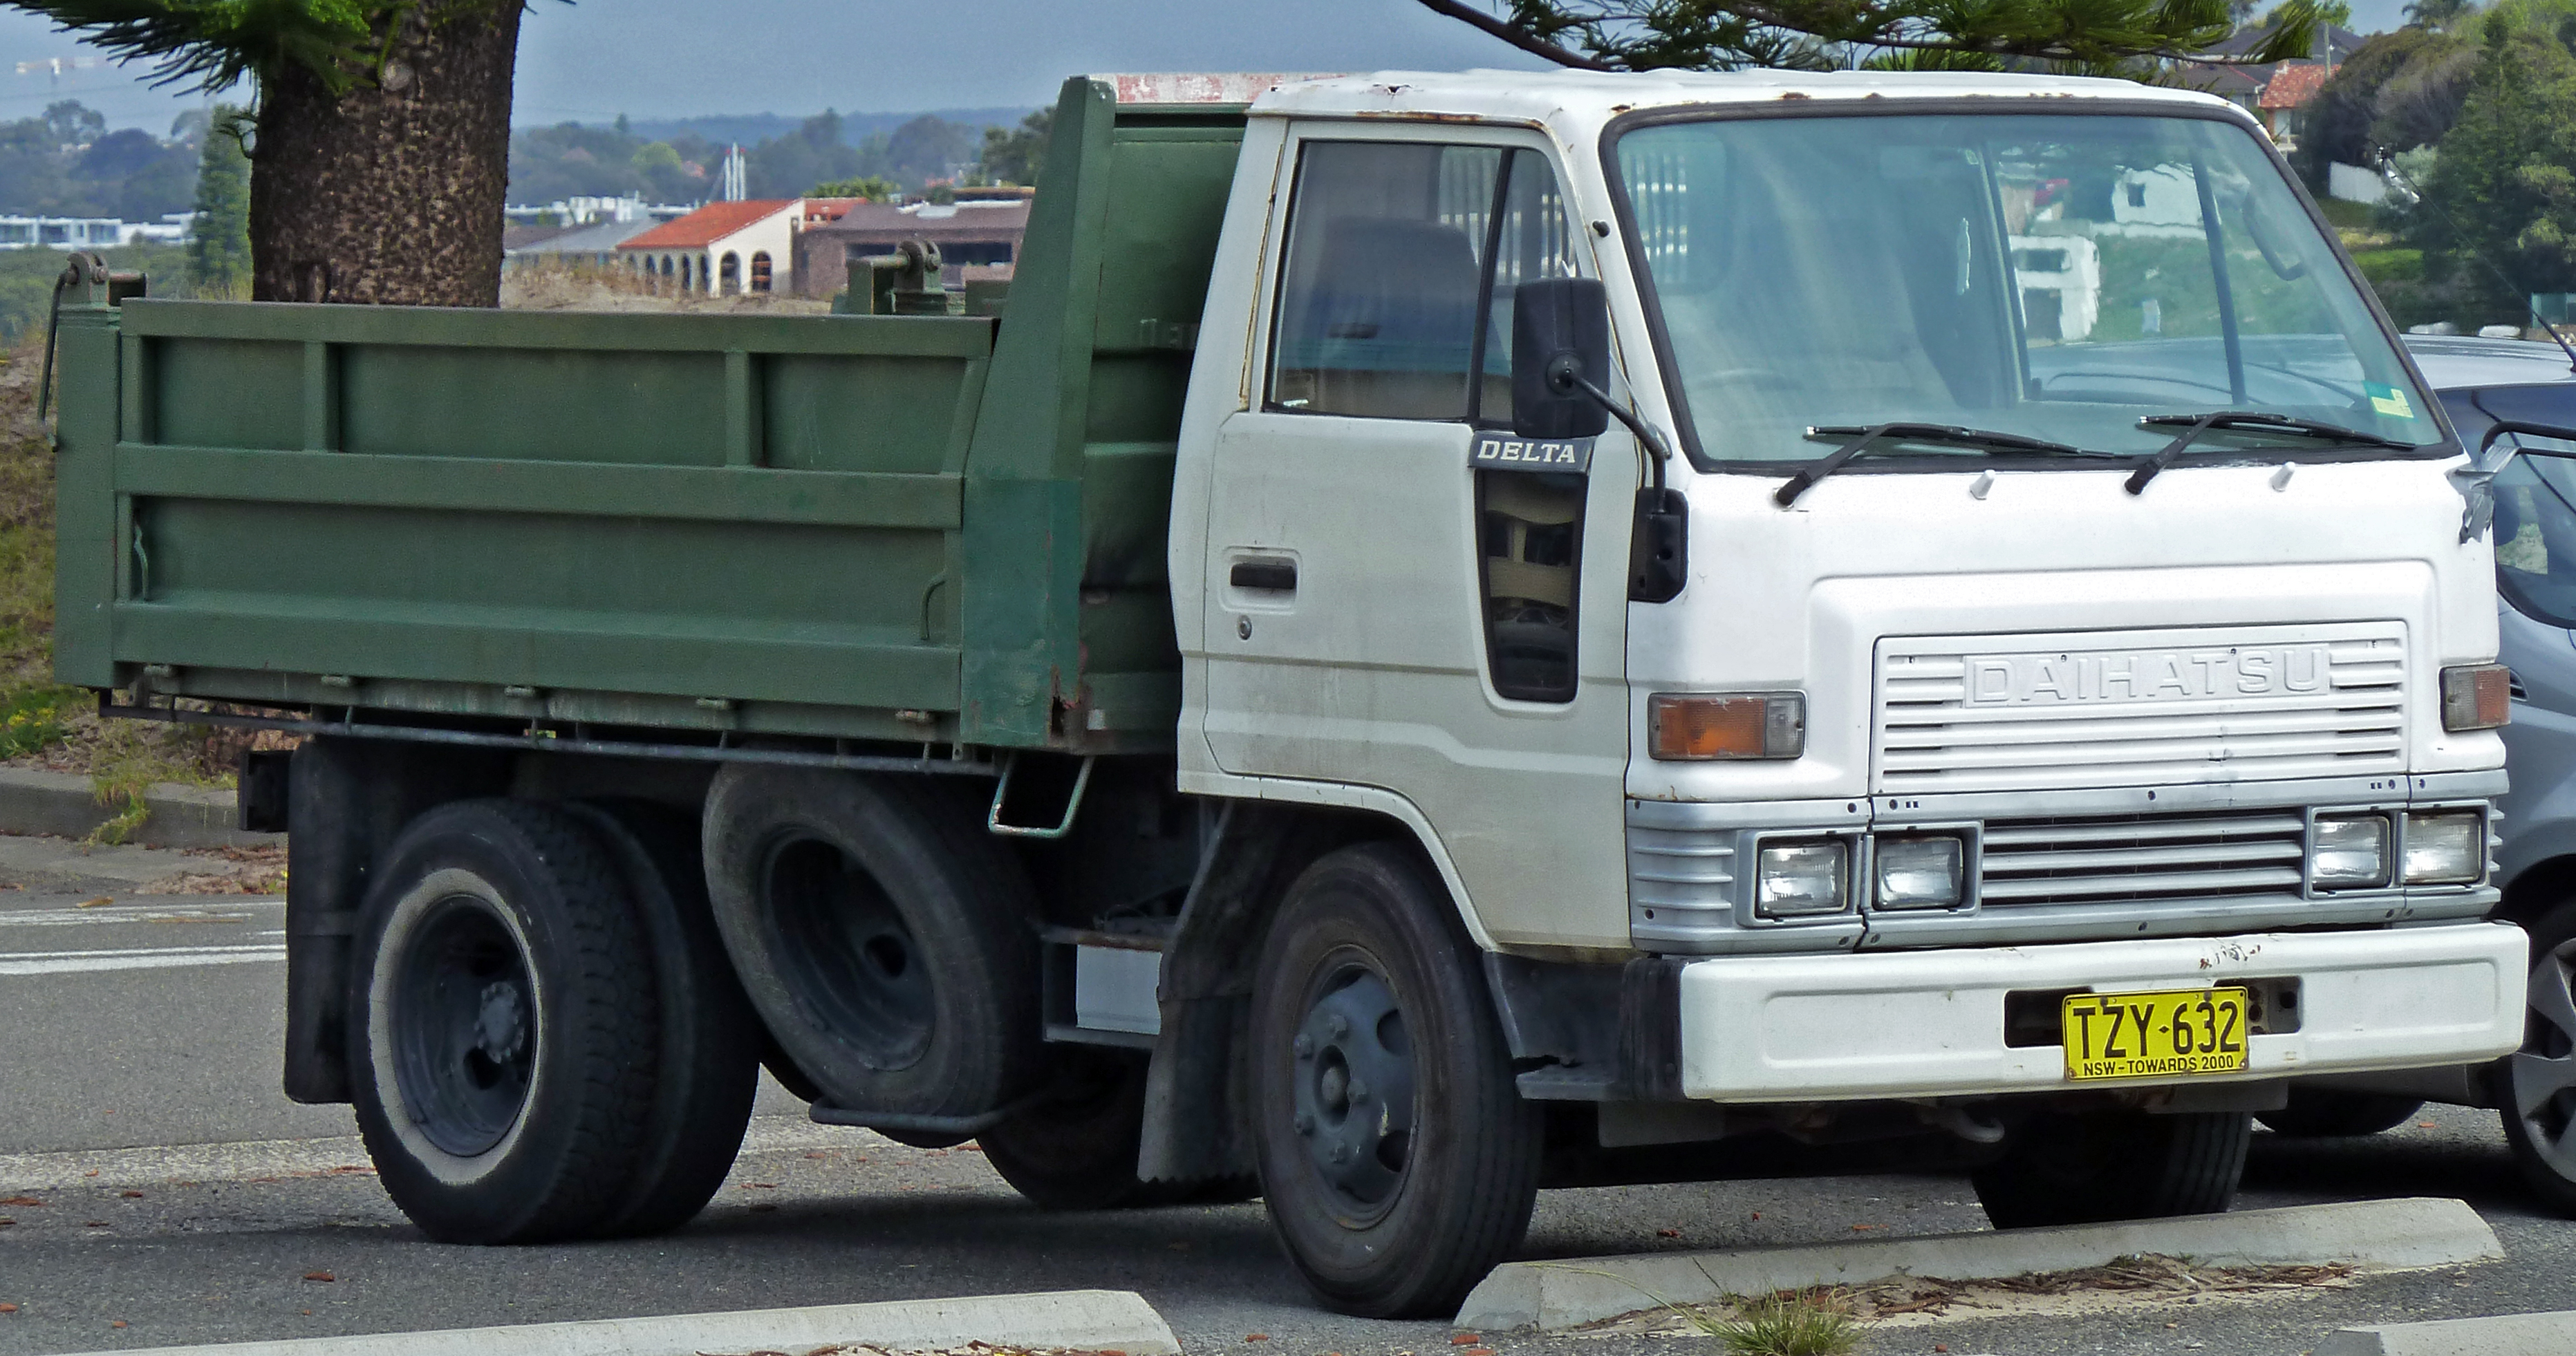 File:Daihatsu Delta 2-door truck 01.jpg - Wikimedia Commons